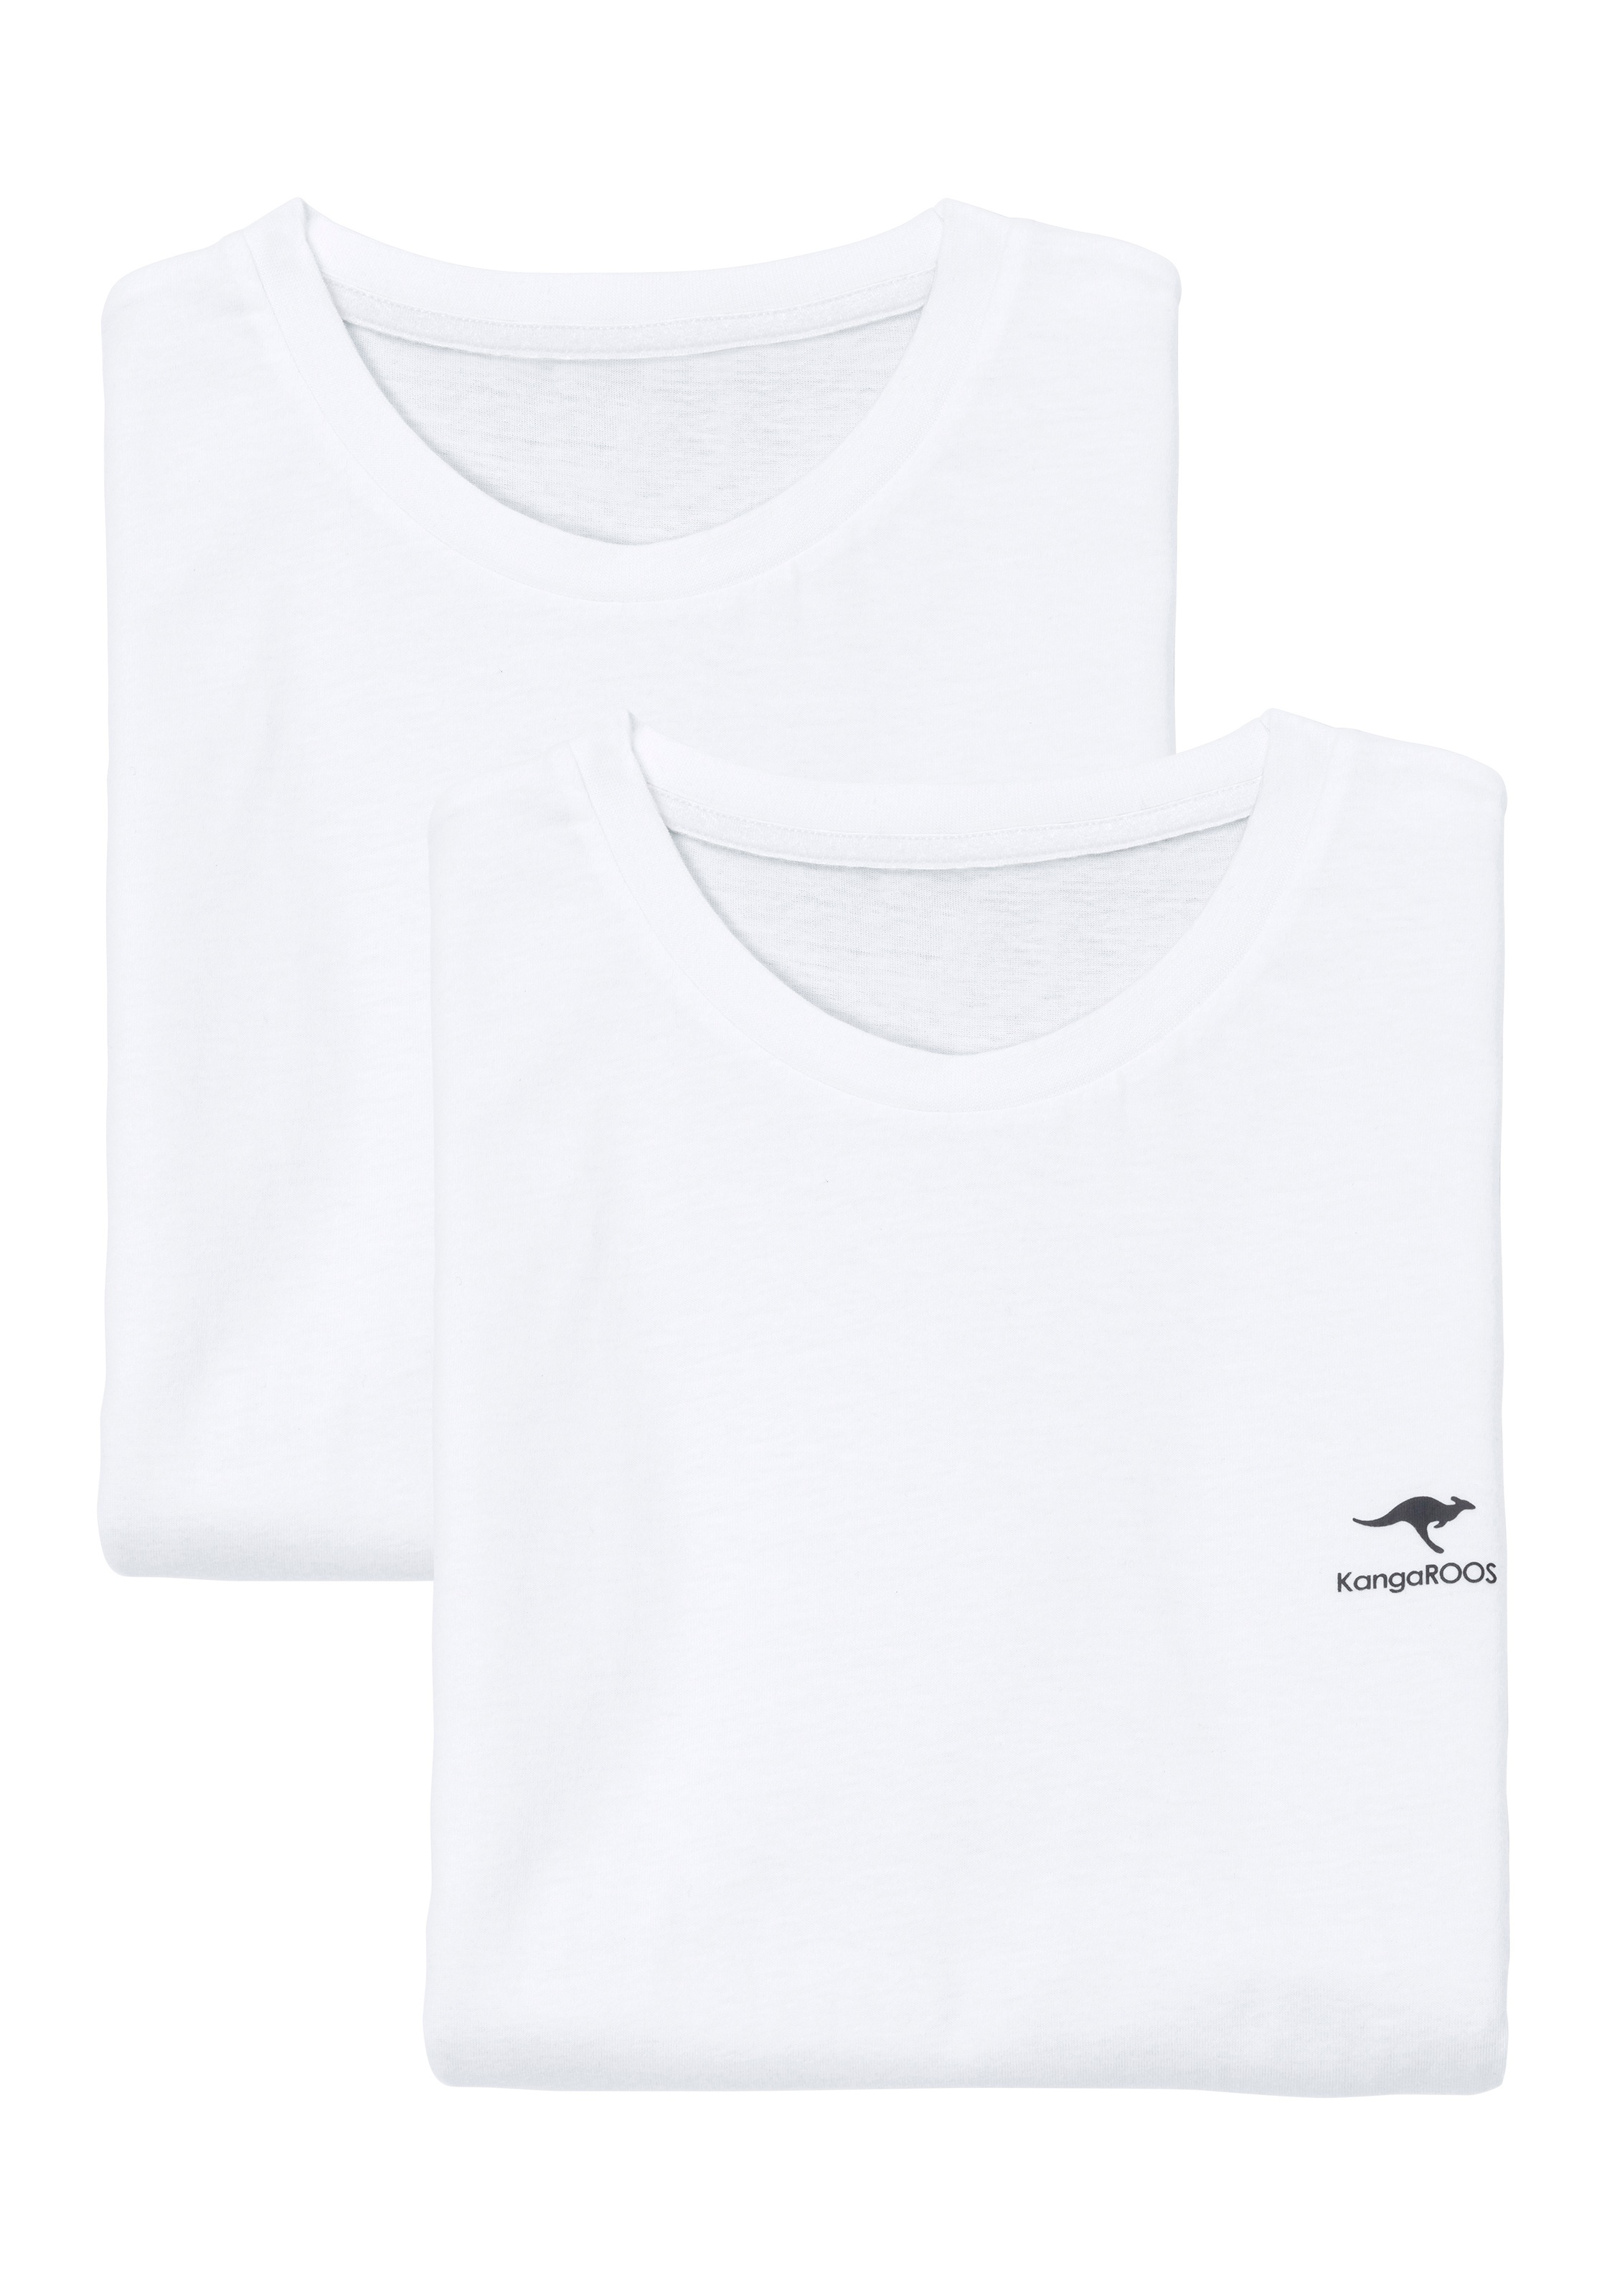 & T-Shirt, » LASCANA Logodruck mit kleinem | Lingerie Unterwäsche kaufen KangaROOS online Bademode,